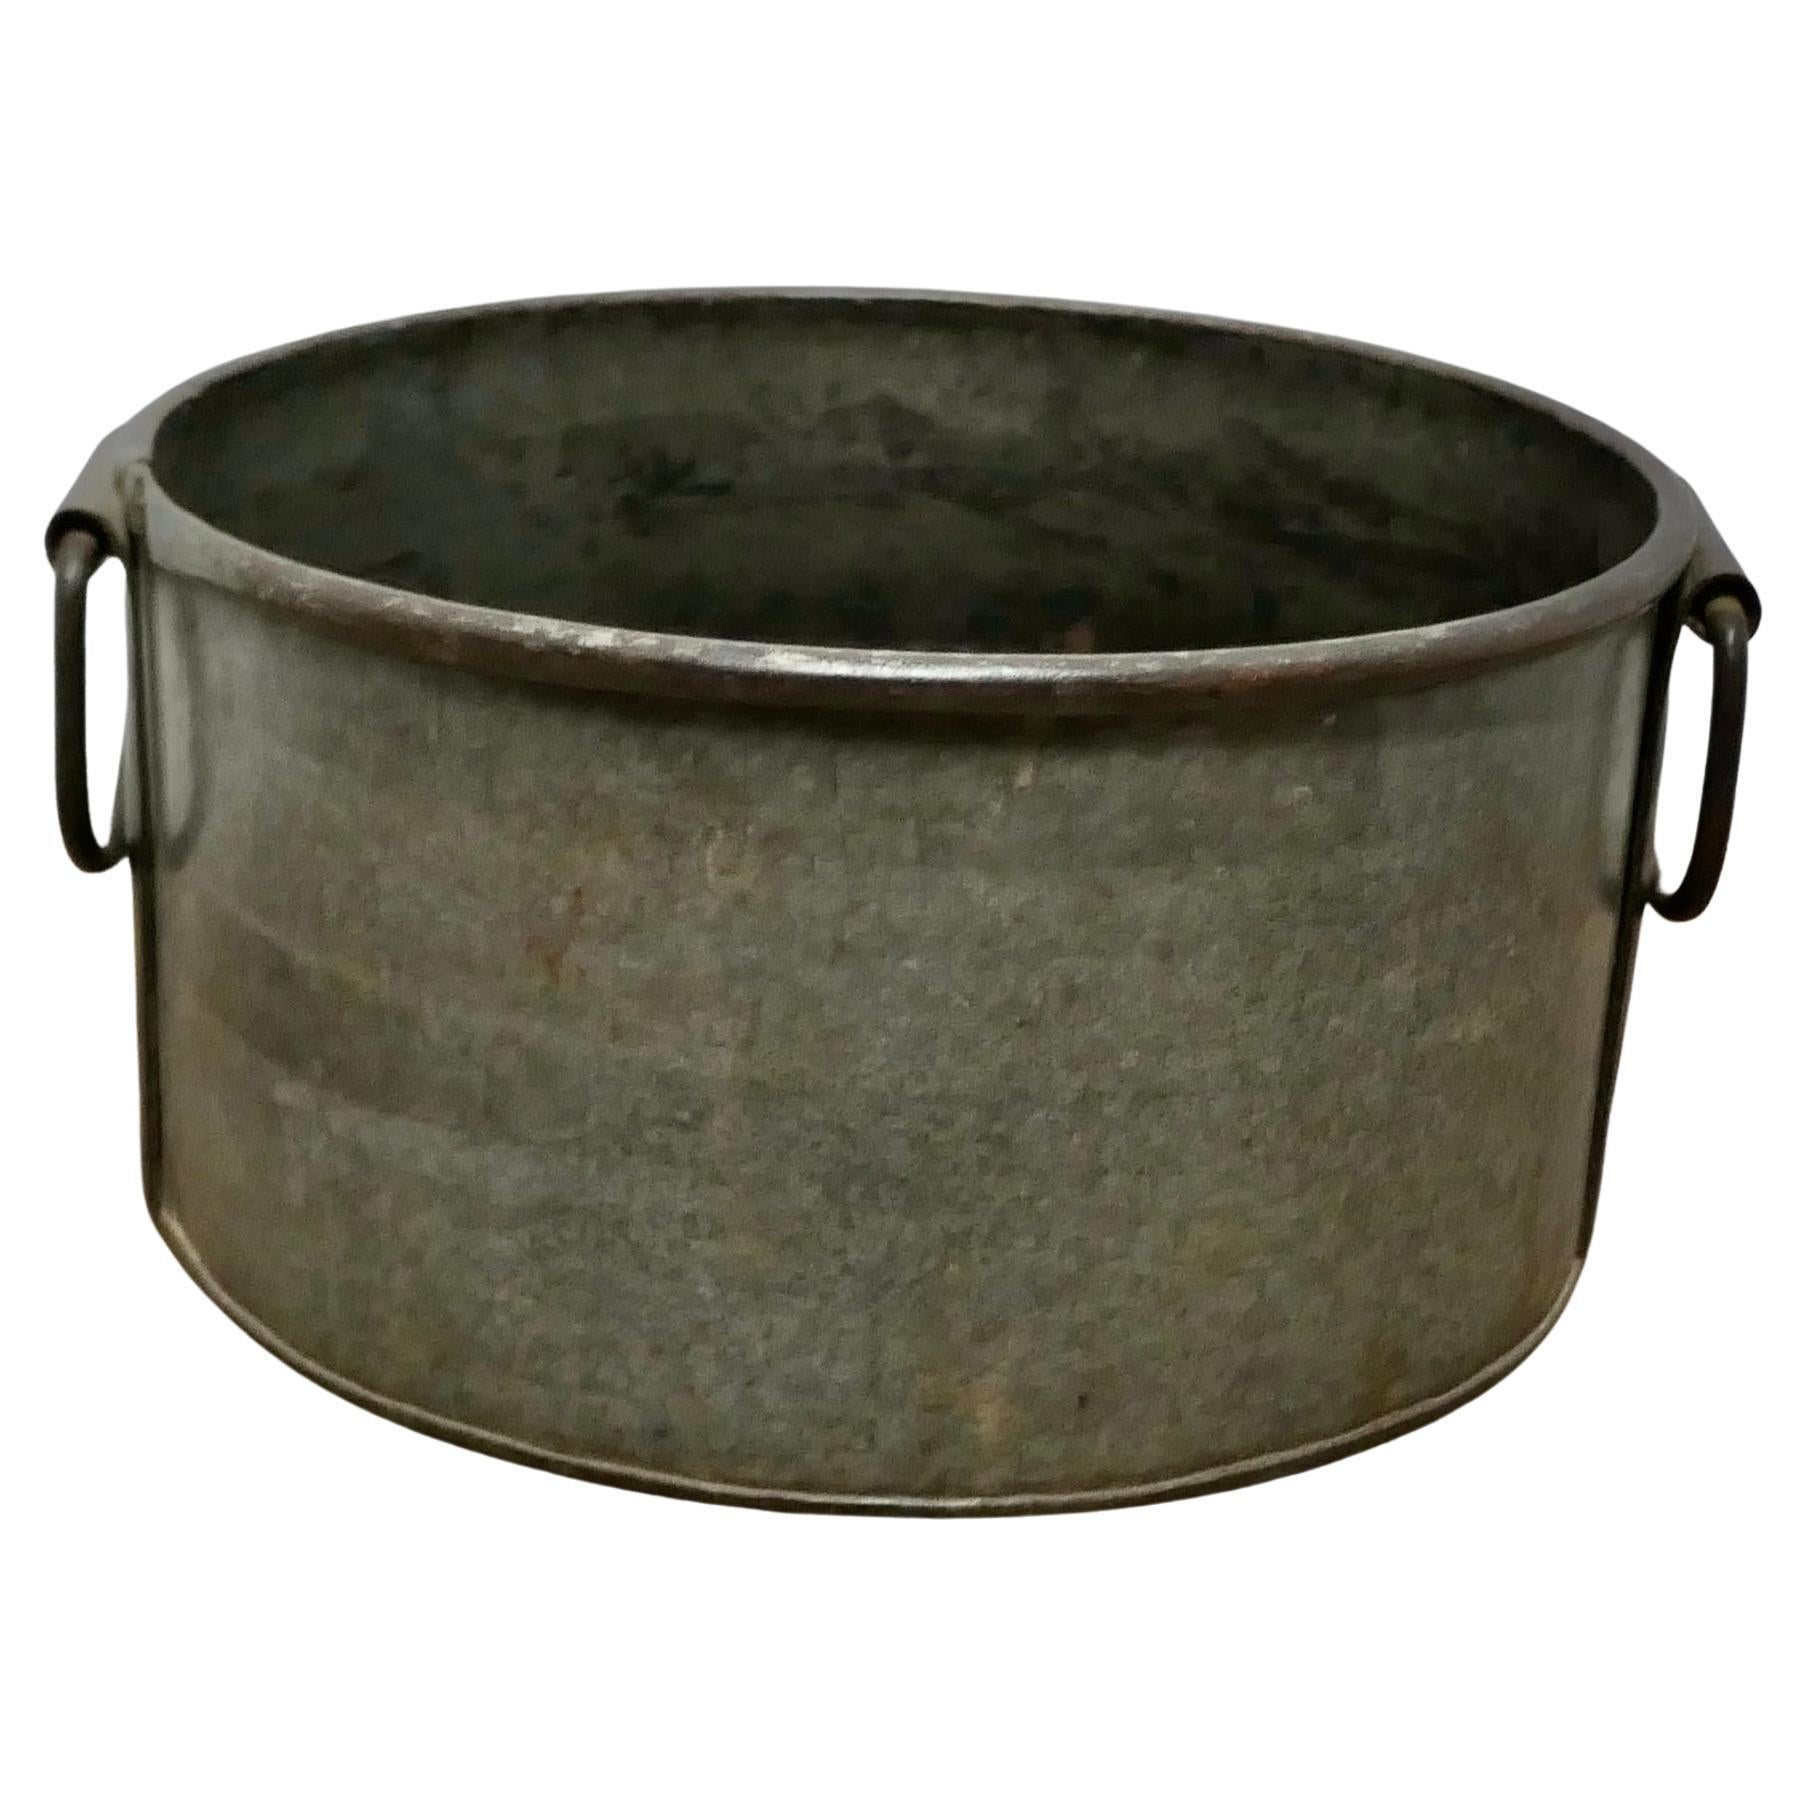 Großer Cauldron Log-Korb aus Zink und Eisen  Dies ist ein großer verzinkter Topf  